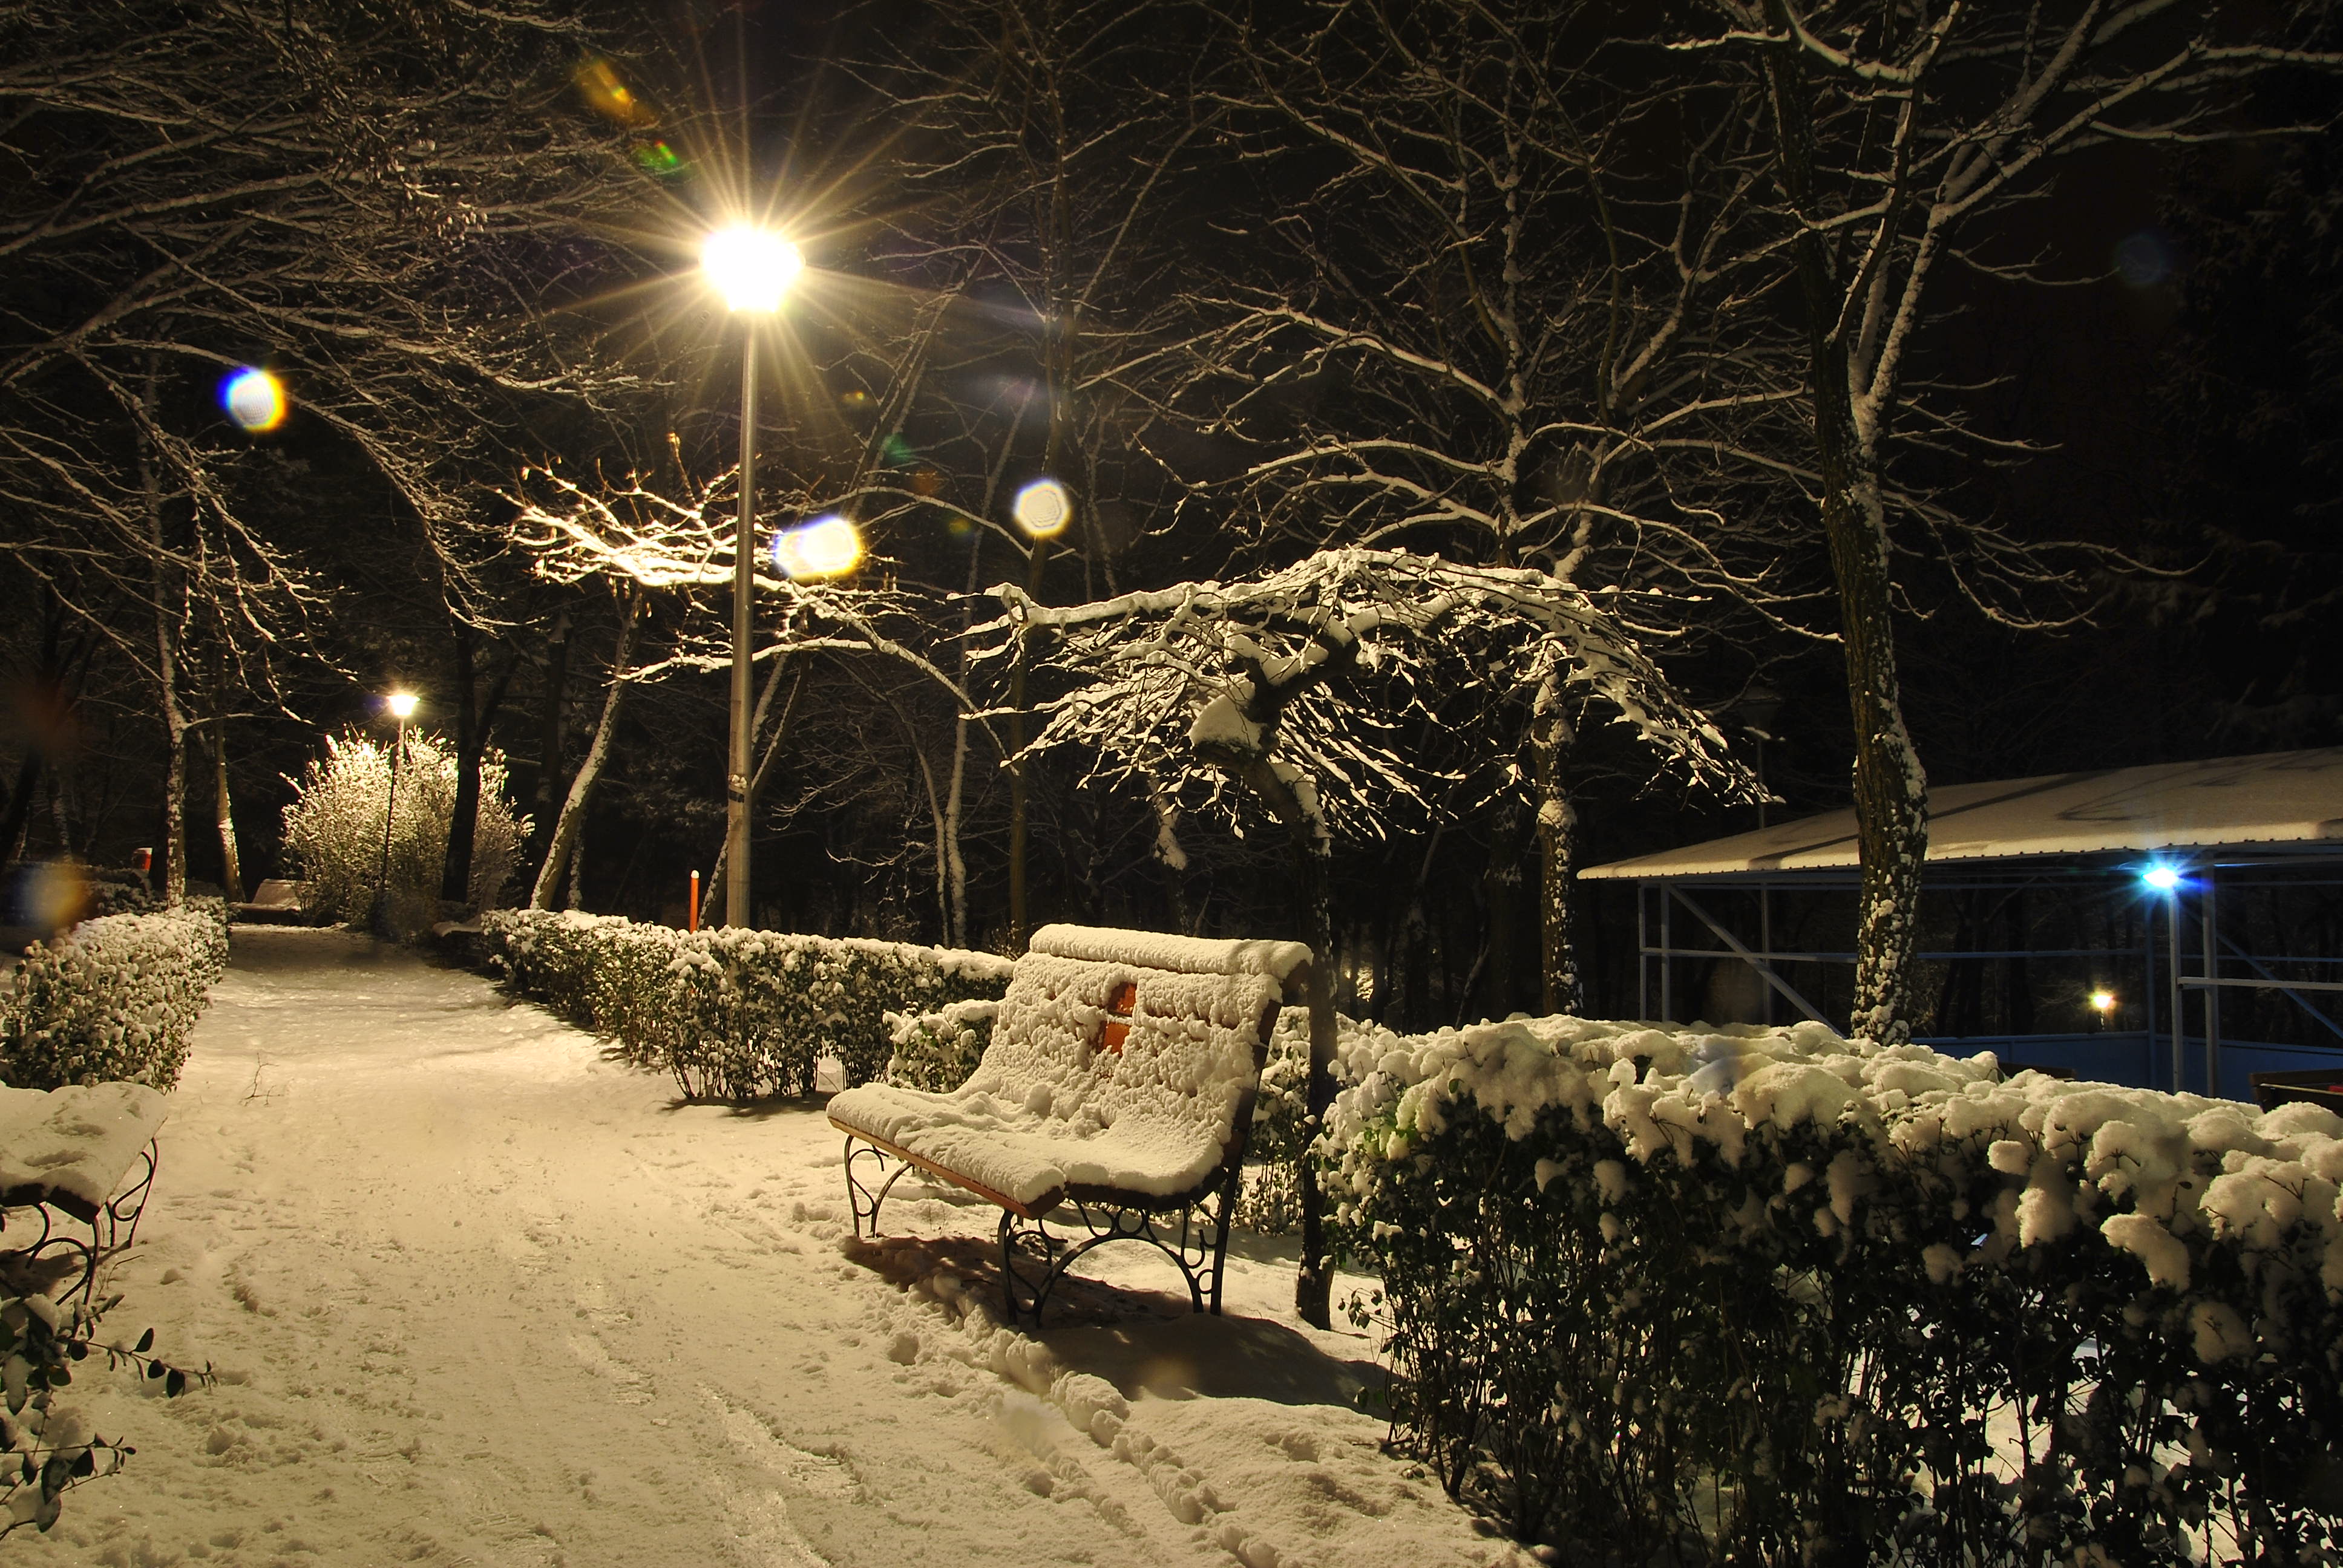 Скачать обои бесплатно Зима, Снег, Фотографии картинка на рабочий стол ПК